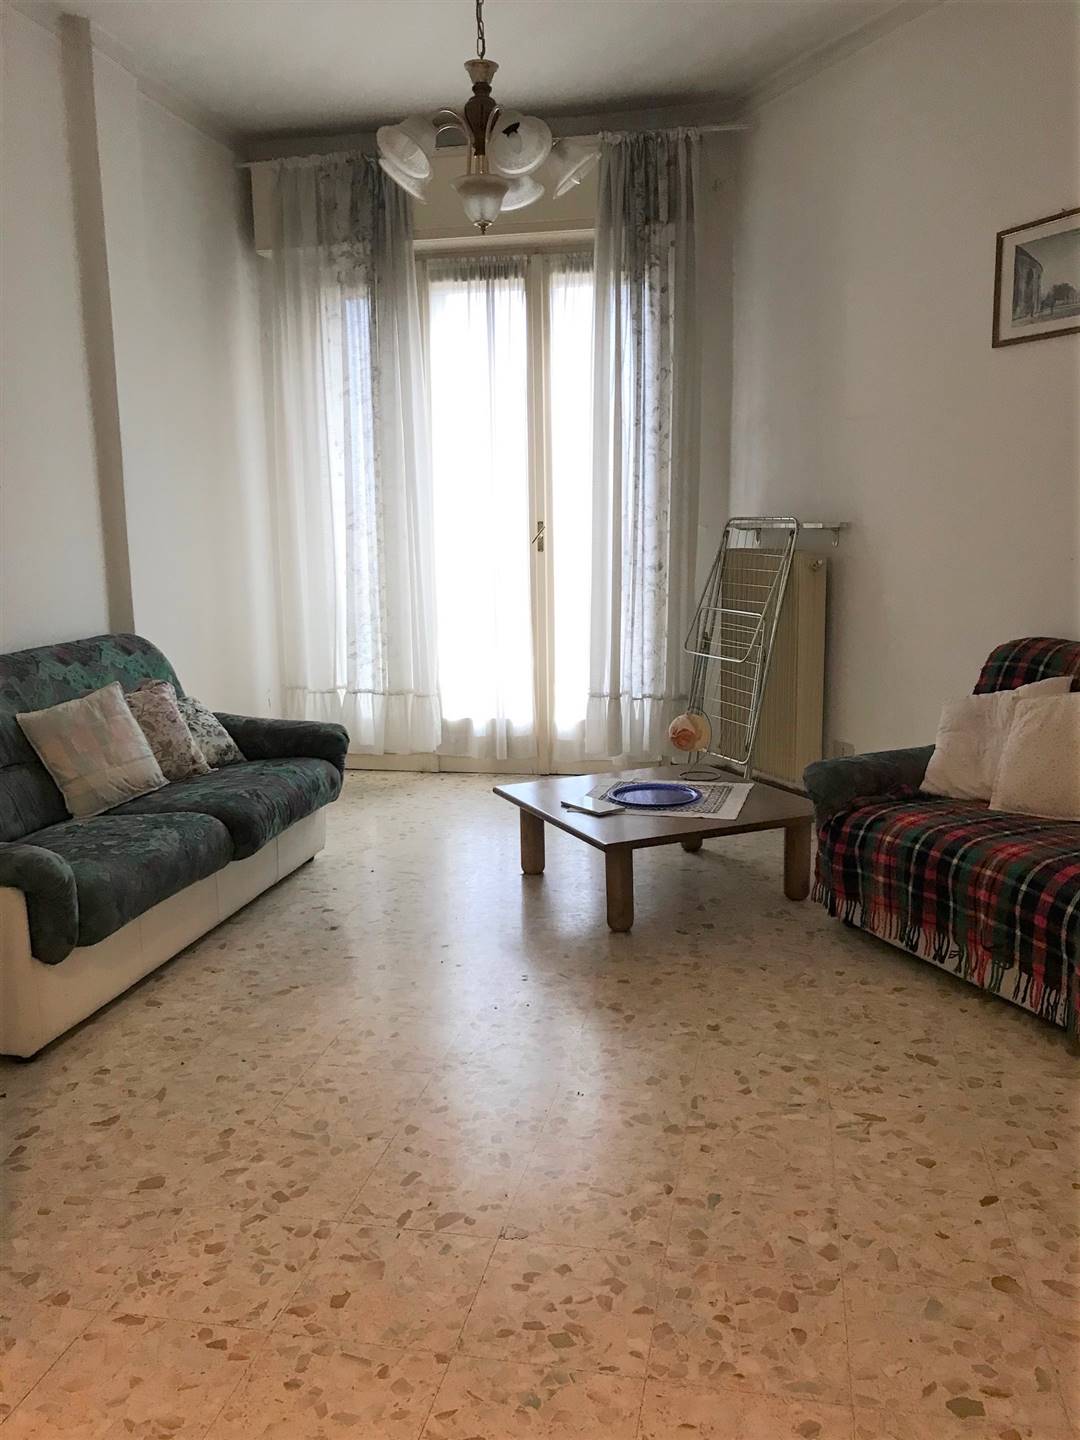 Appartamento in vendita a Mantova, 6 locali, zona Zona: Frassino, prezzo € 45.000 | CambioCasa.it